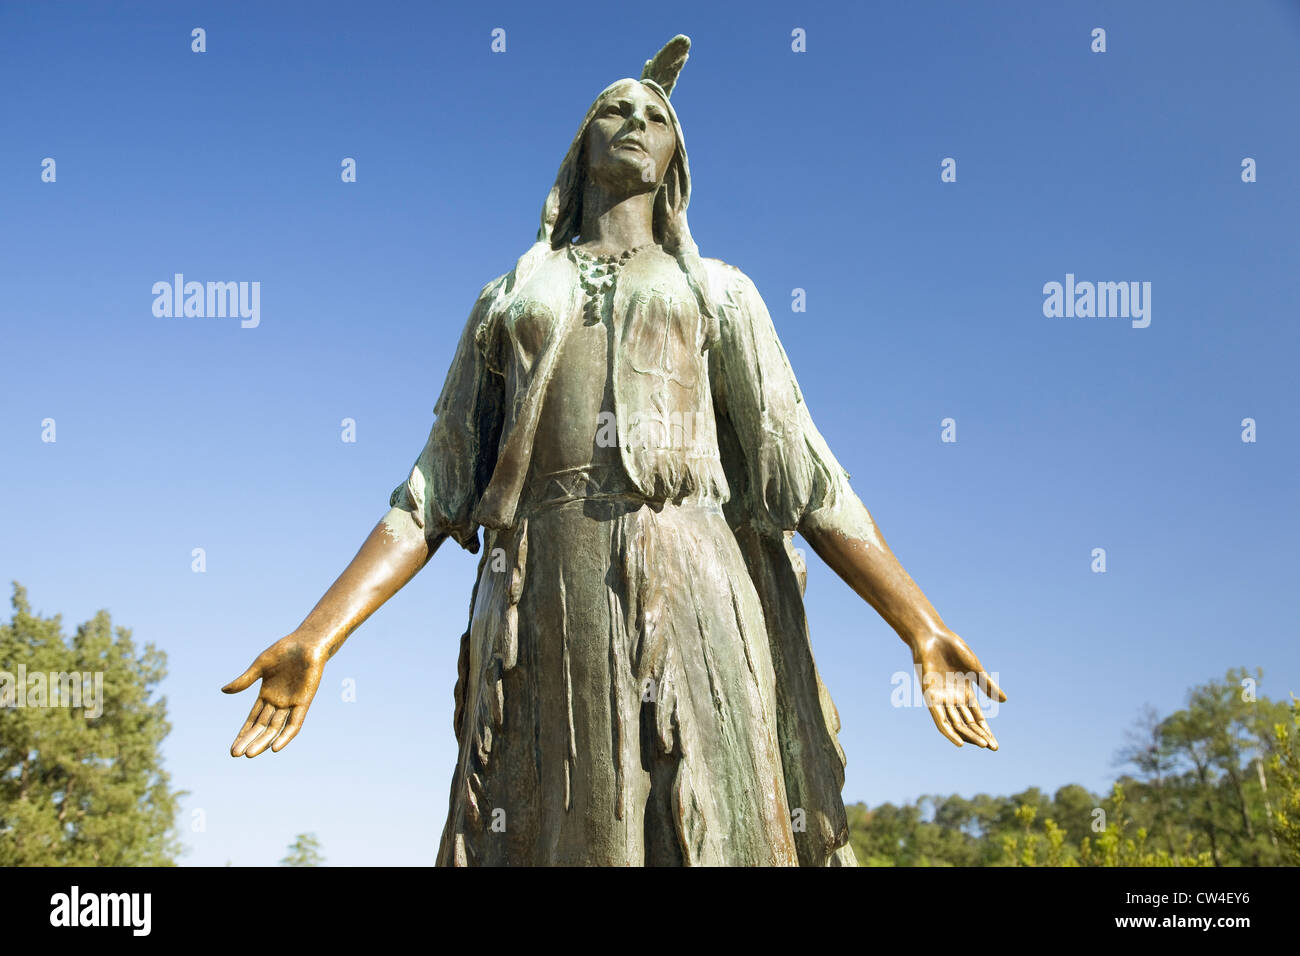 Pocahontas statua da William Ordway Partridge eretta nel 1922 che rappresenta Pocahontas figlia prediletta Powhatan che hanno governato Foto Stock